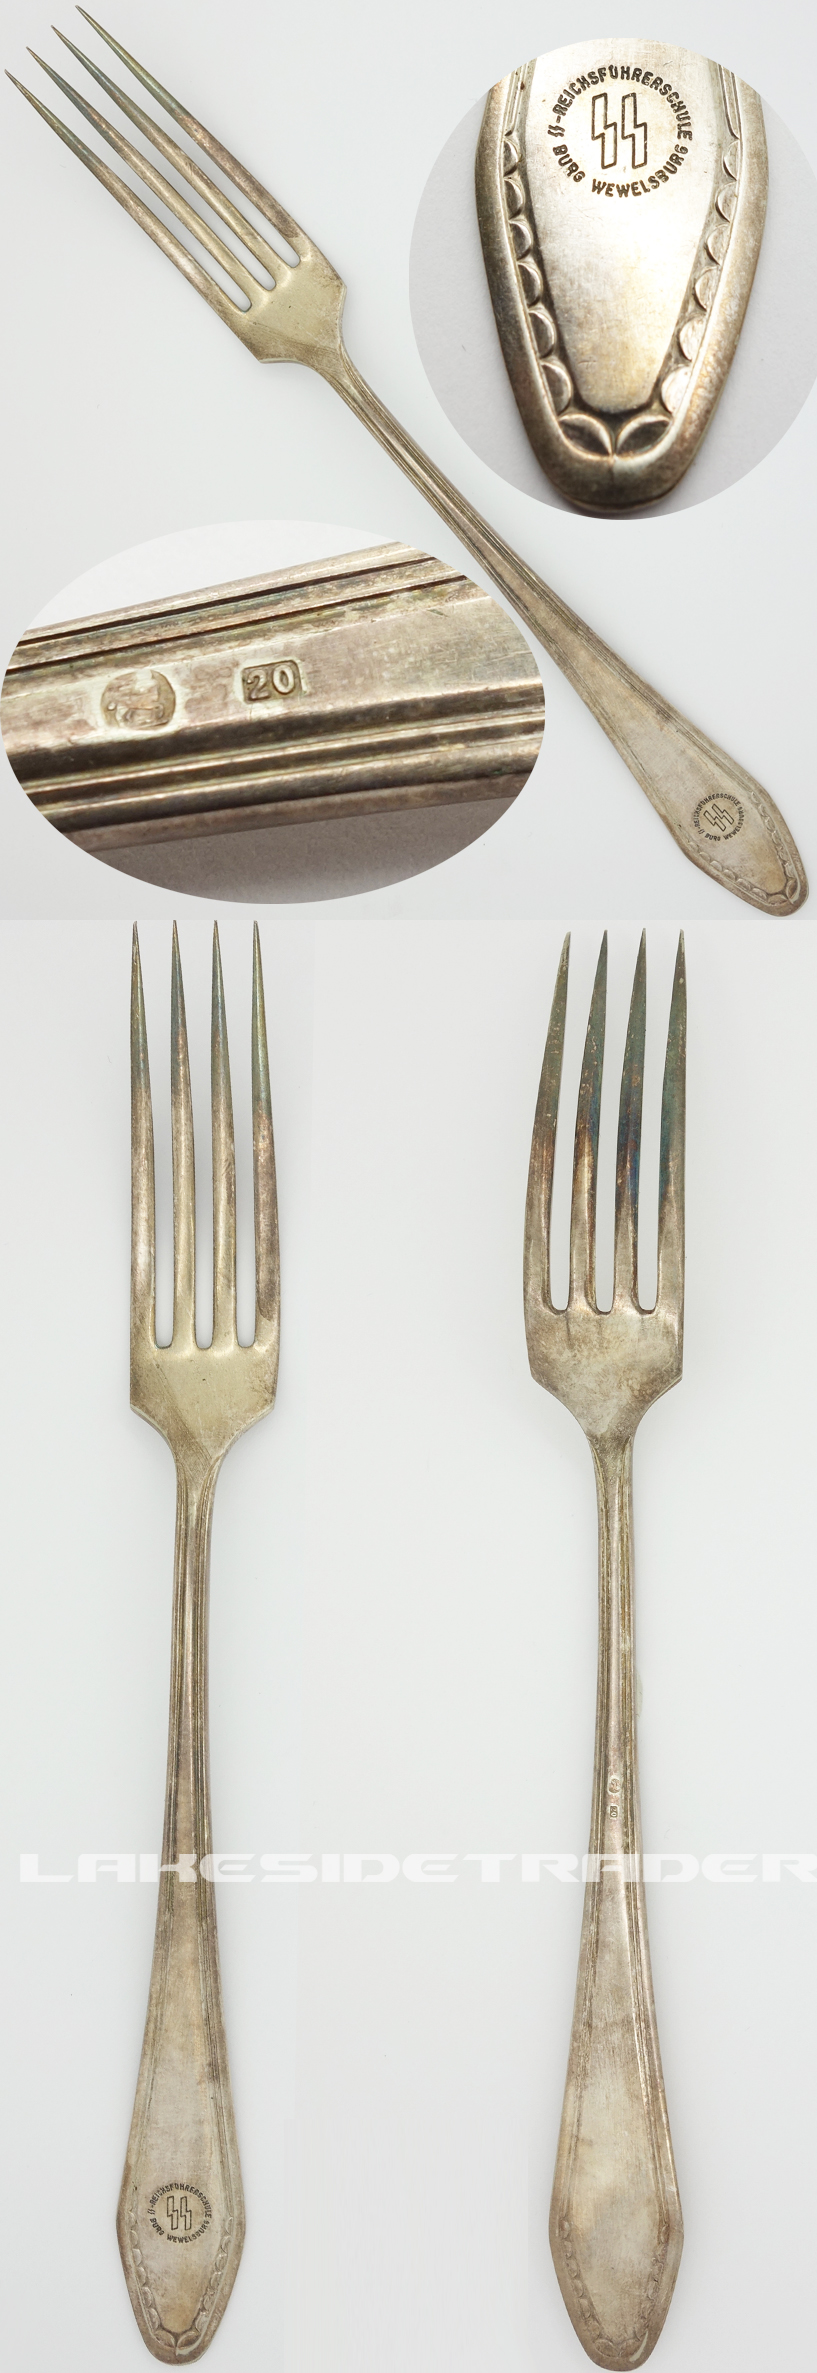 SS Wewelsburg Dinner Fork